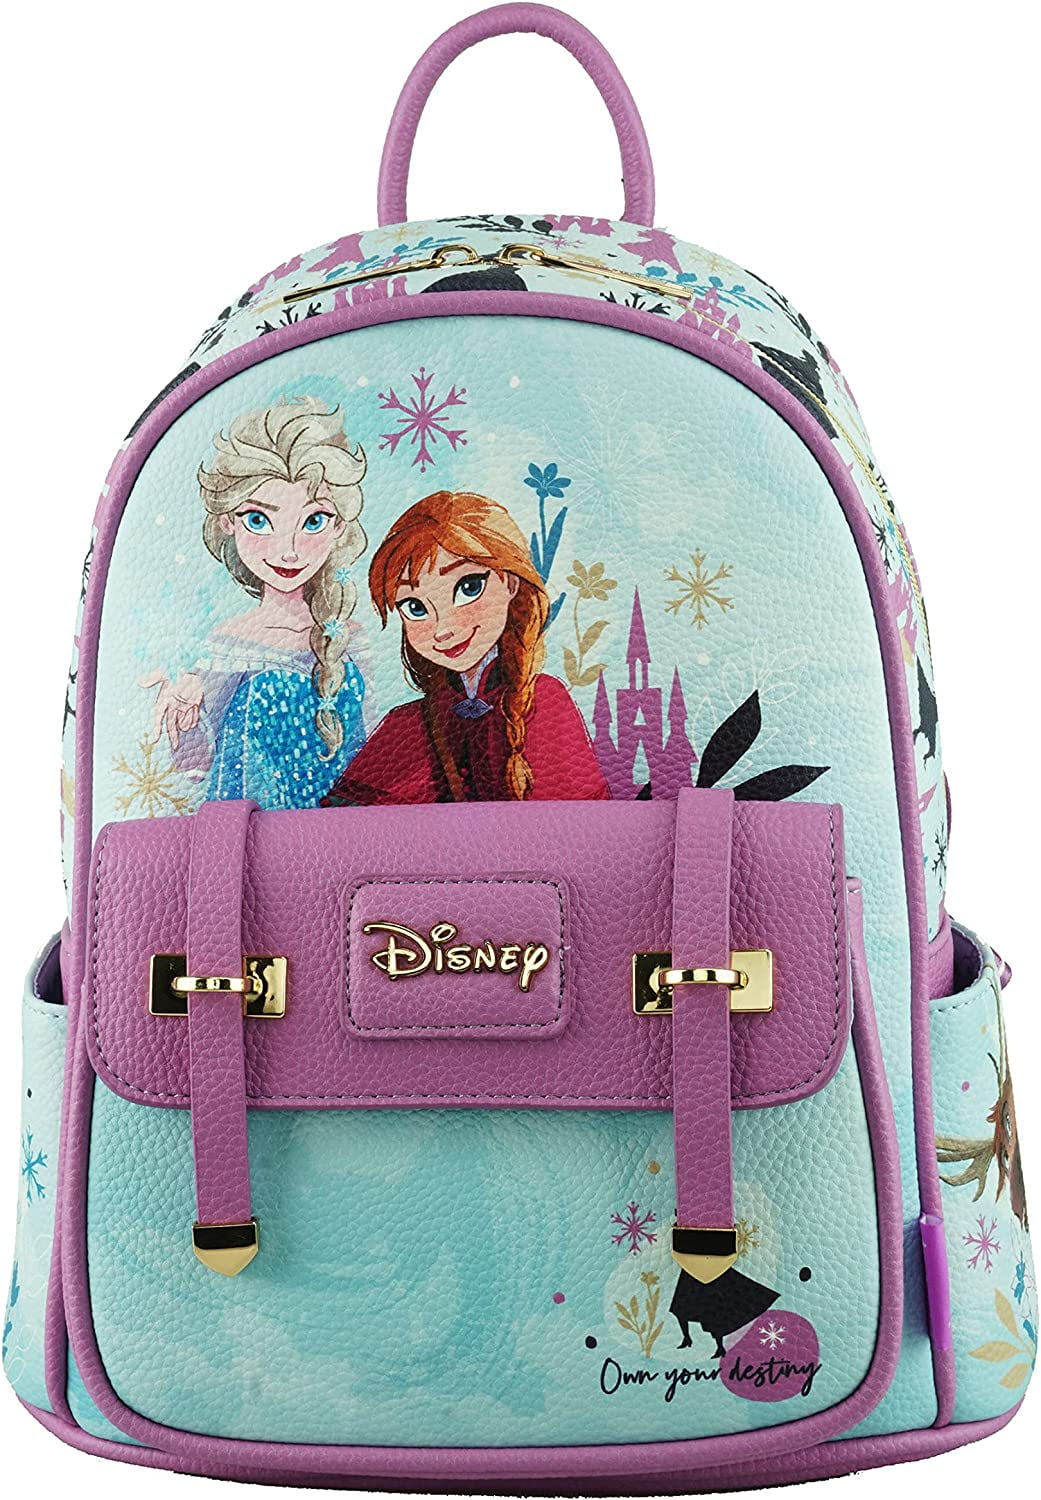 Wondapop Disney Frozen Elsa and Anna 11 Vegan Leather Fashion Mini Backpack c5c67f0b 3c96 40c7 99b1 fb53c767d416.04e3674680ab3306e019d711a5672971